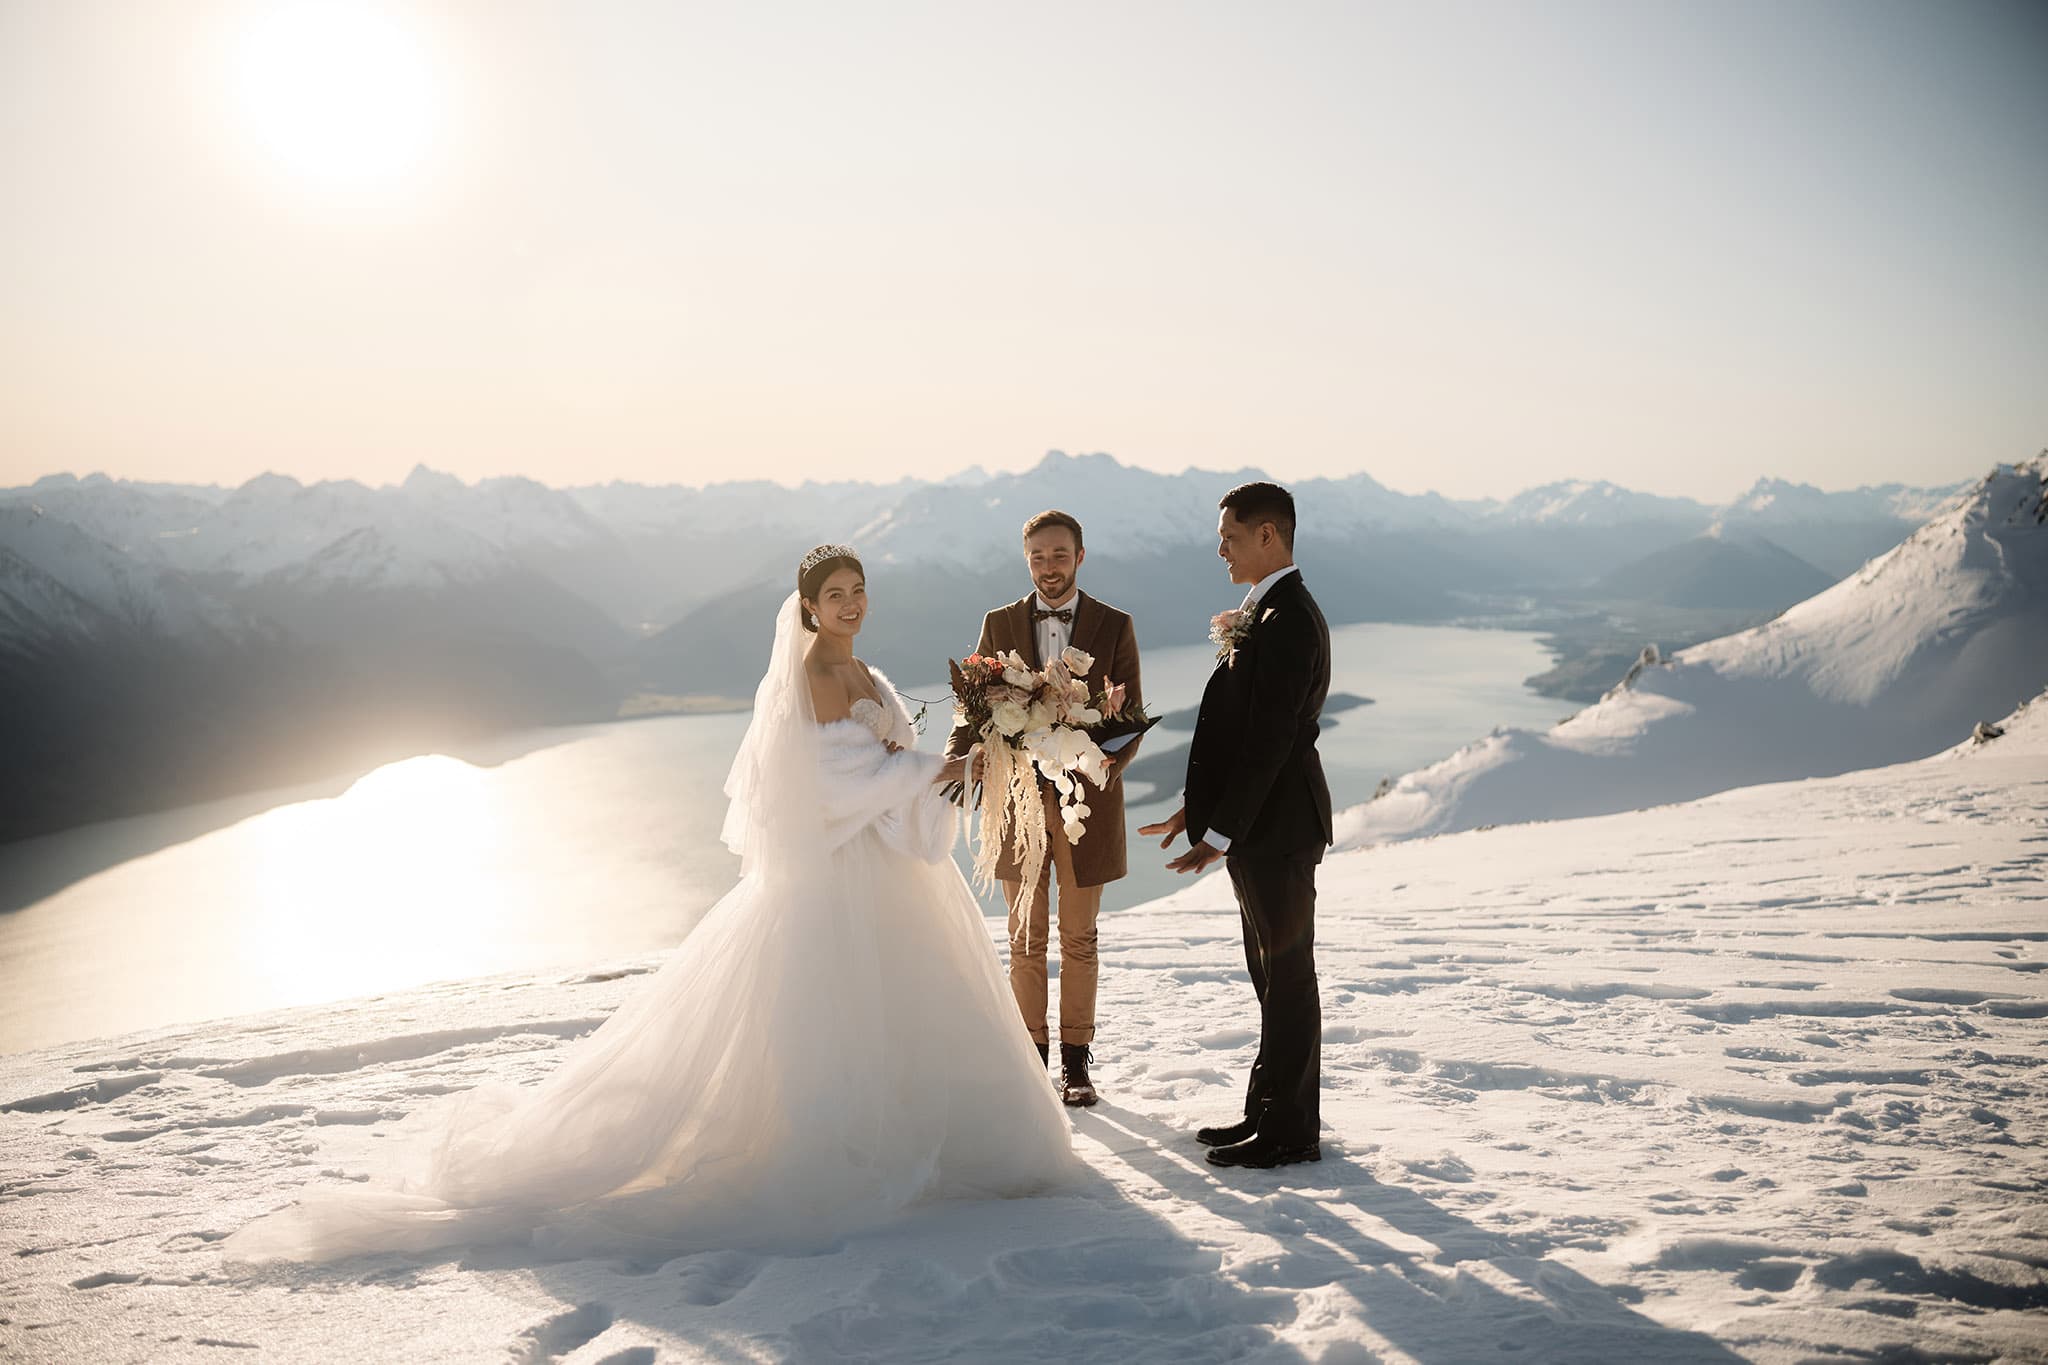 クイーンズタウン　ニュージーランド　ウェディング　前撮り　挙式　結婚式　フォトグラファー | 雪山の頂上でクイーンズタウンのヘリウェディングを楽しむ新郎新婦。